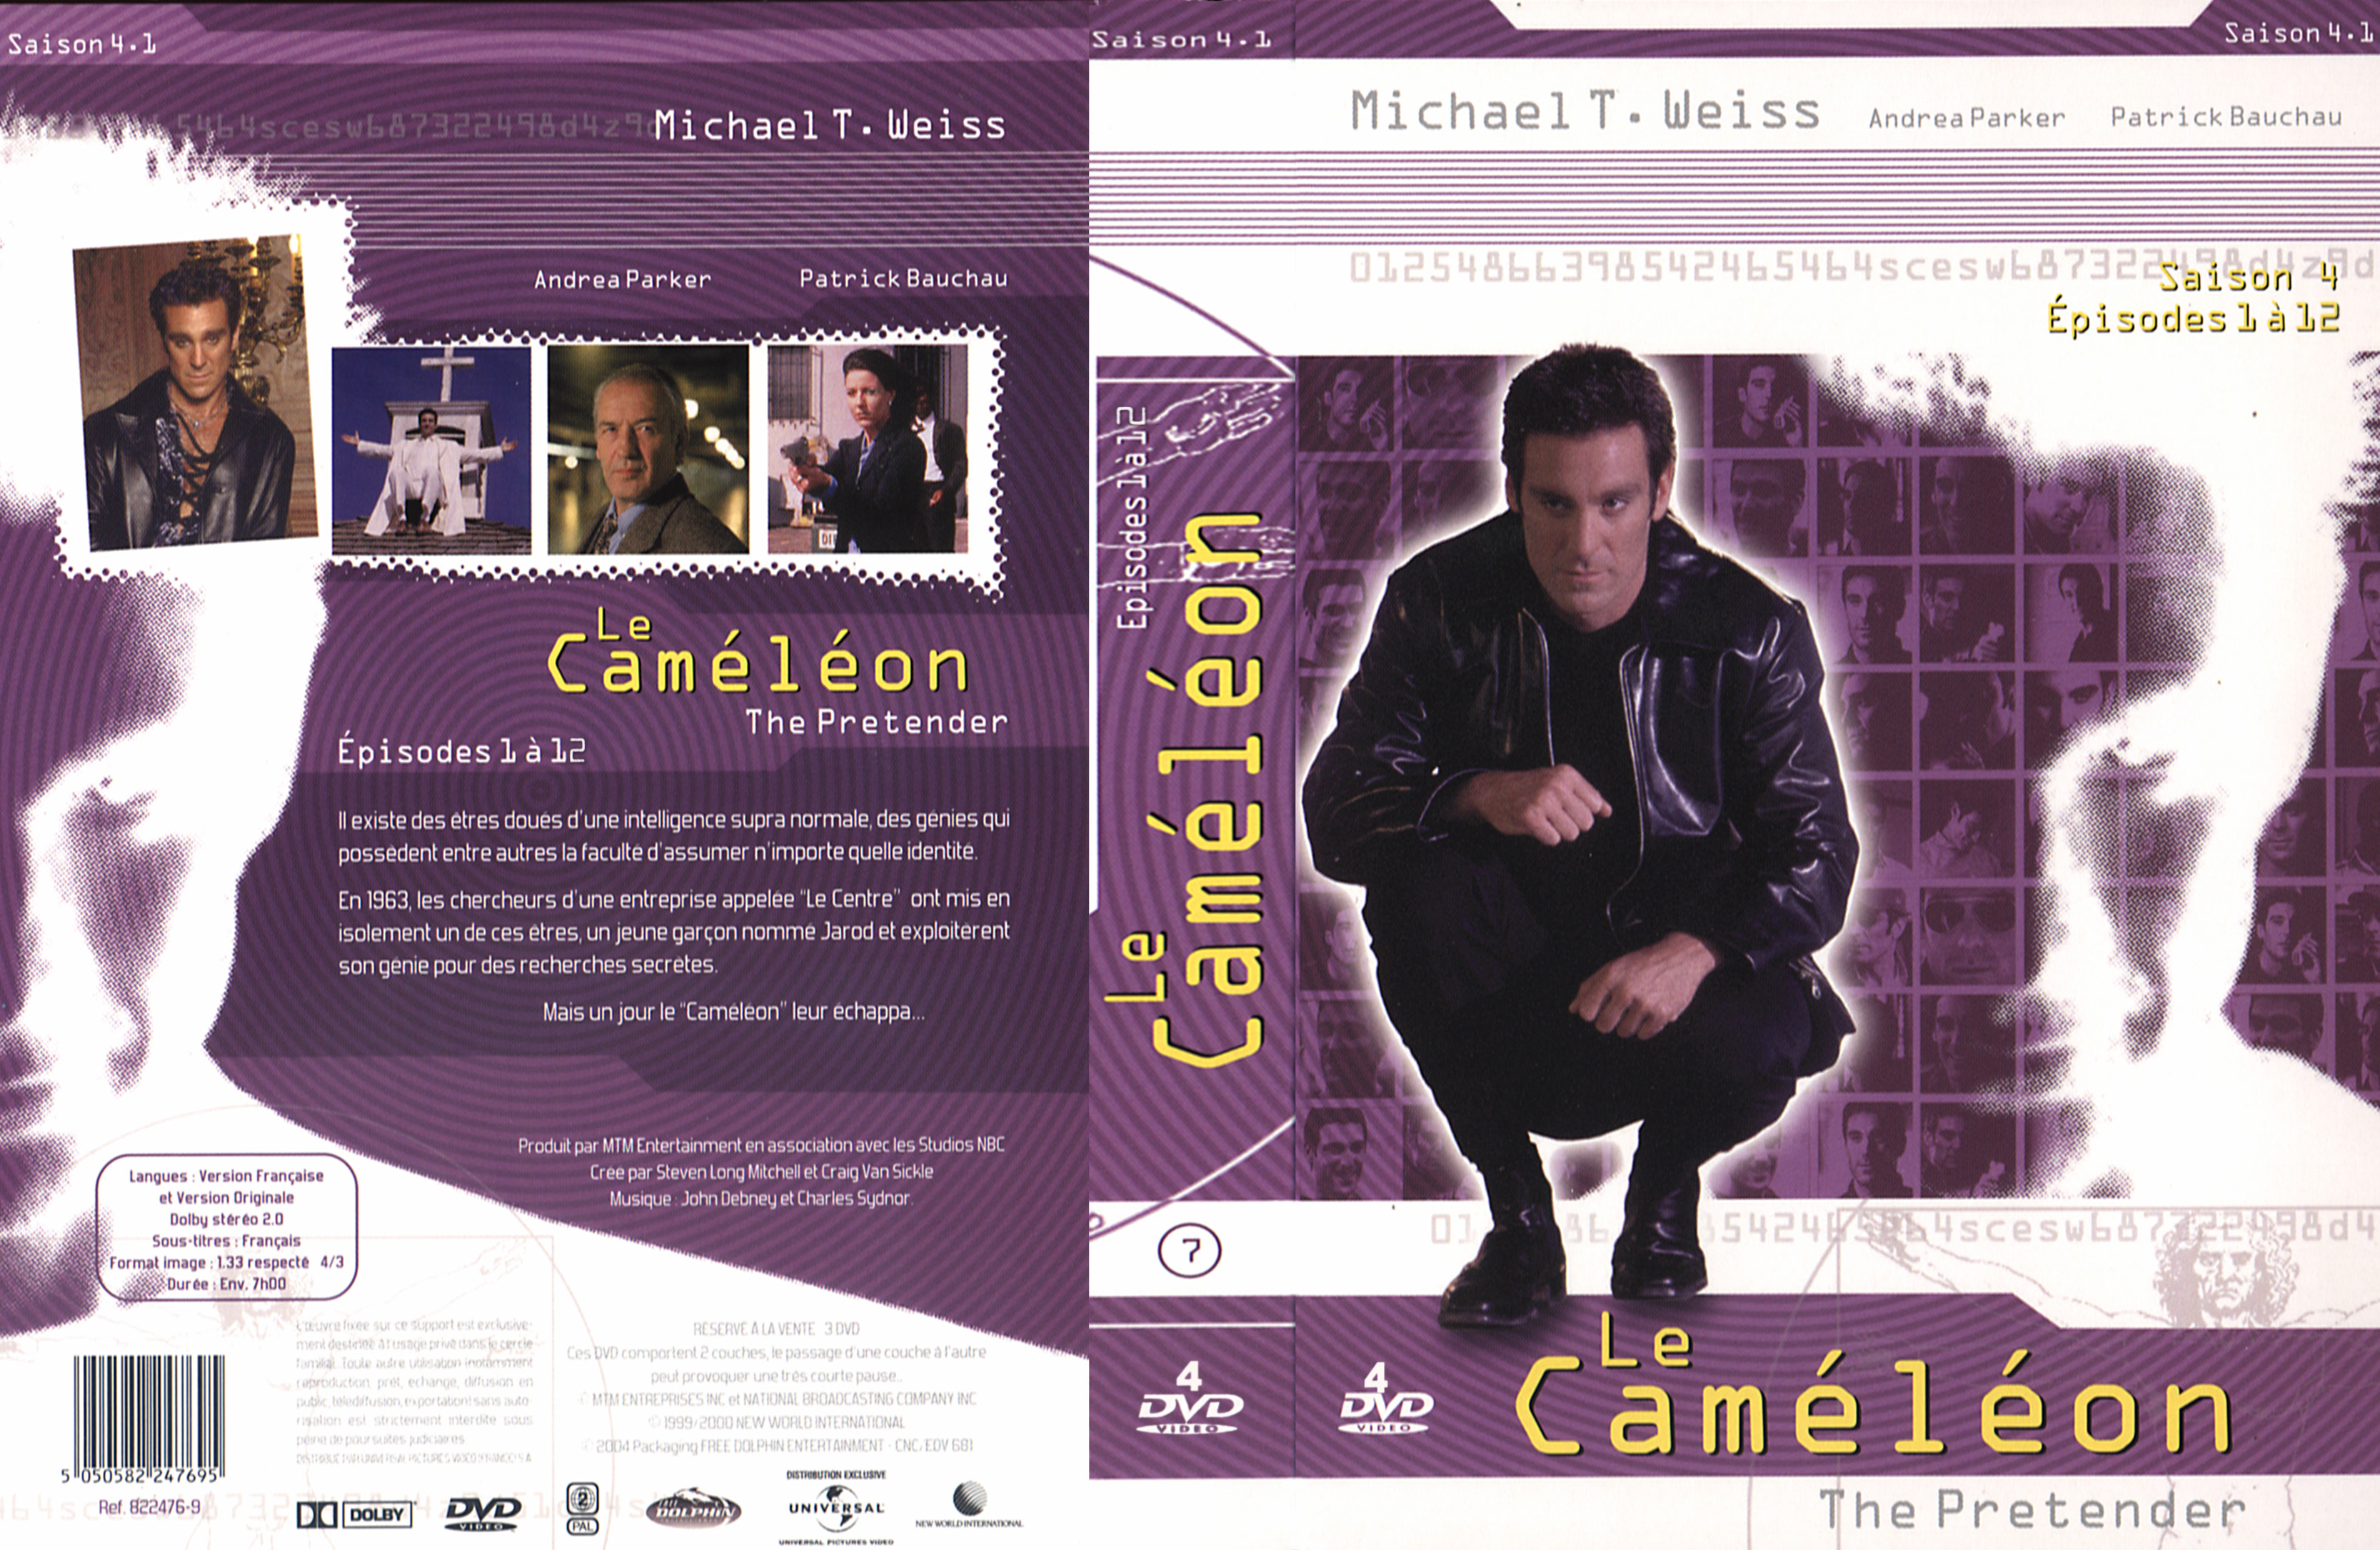 Jaquette DVD Le camlon Saison 4 COFFRET 1